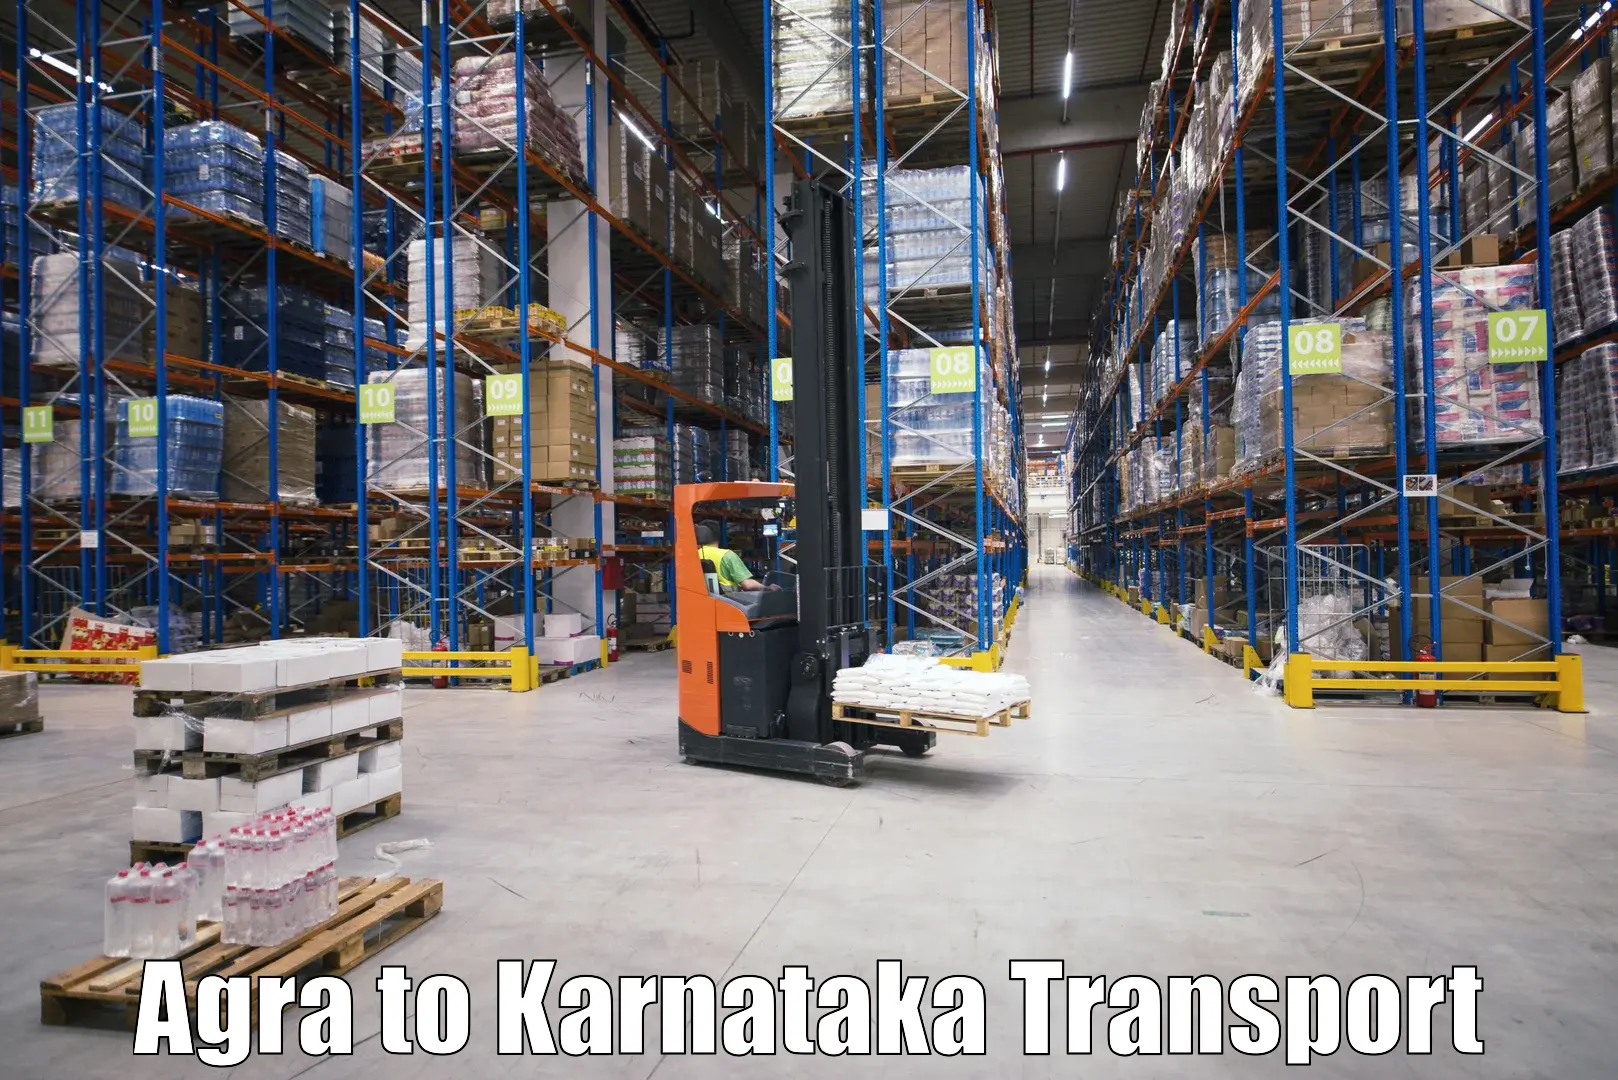 Daily transport service Agra to Kanakapura